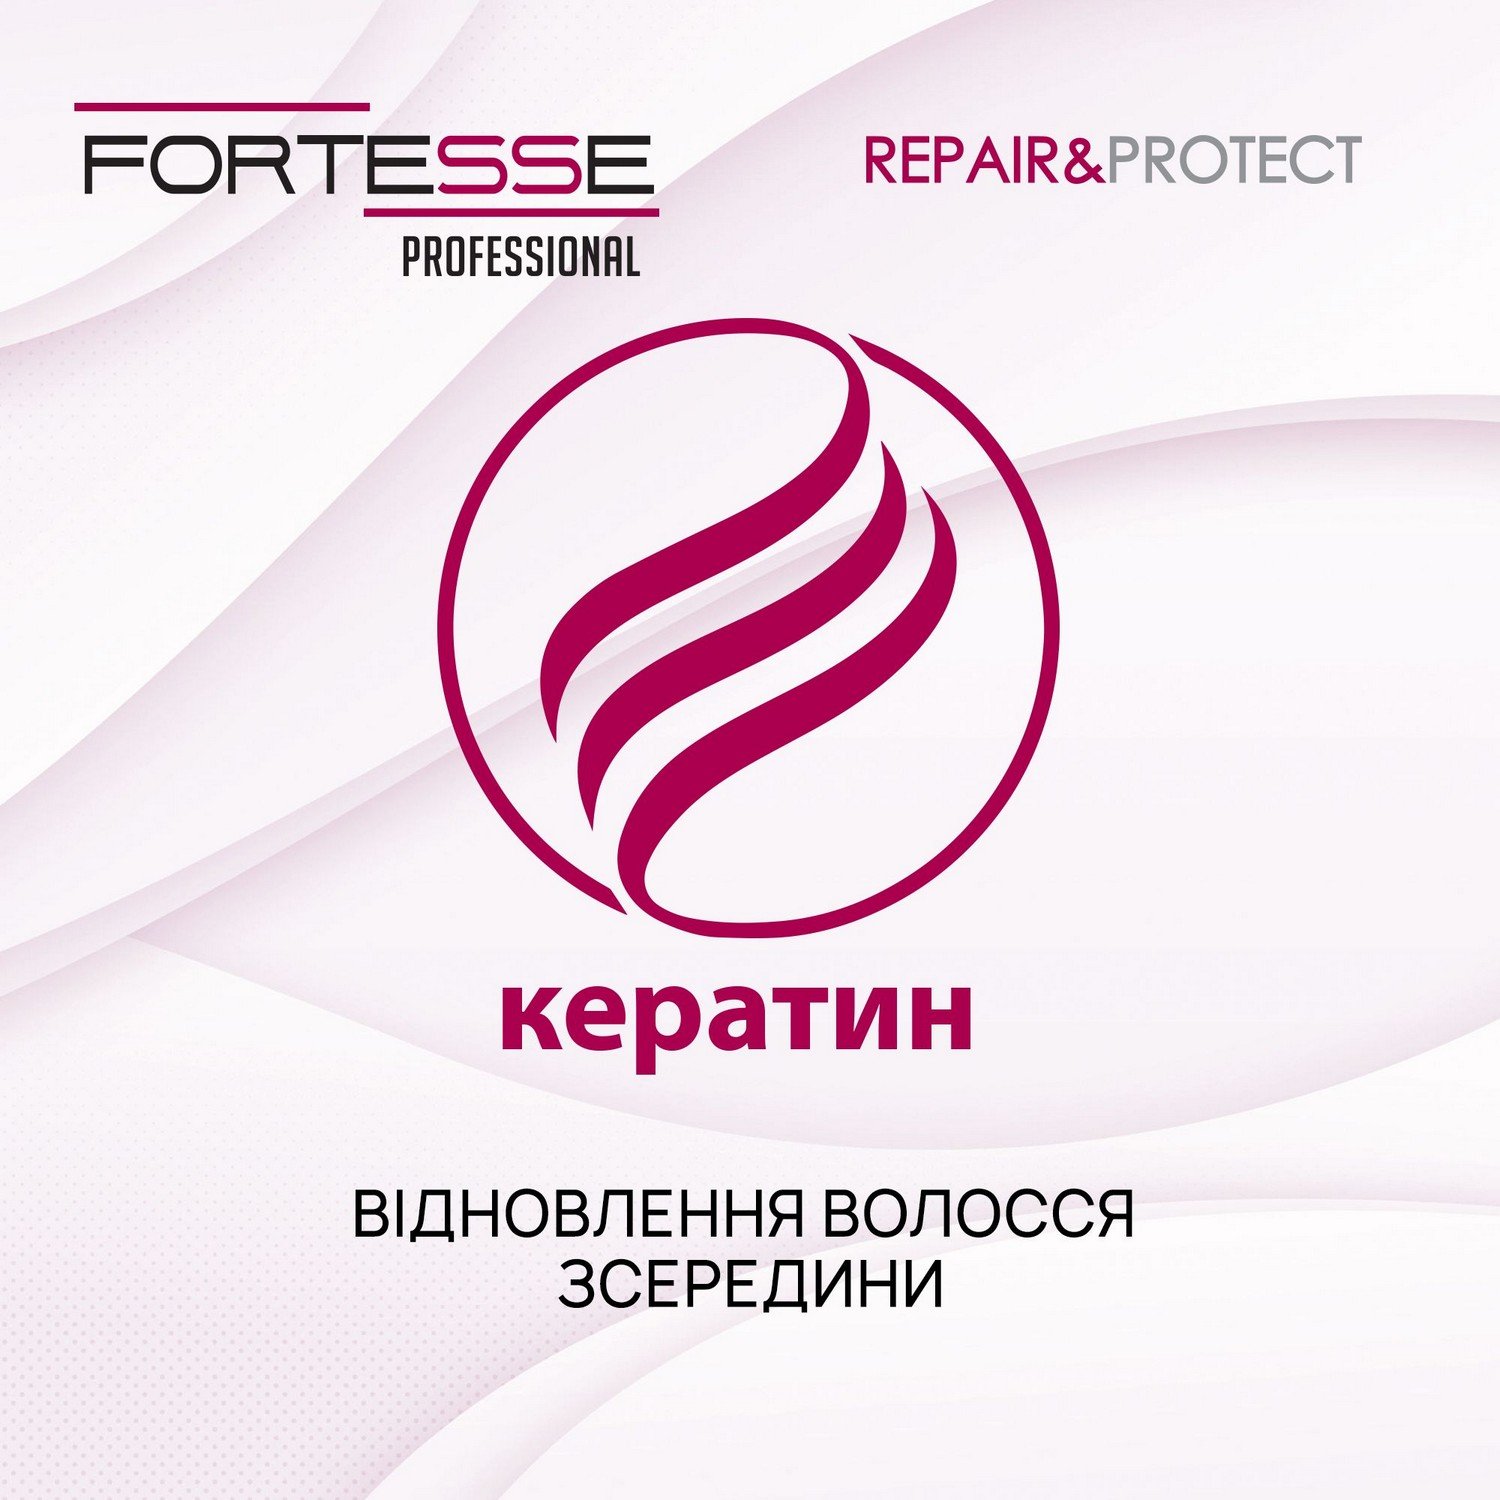 Восстанавливающая бальзам-маска Fortesse Professional Repair&Protect для сухих, поврежденных волос, нуждающихся в питании, 200 мл - фото 5